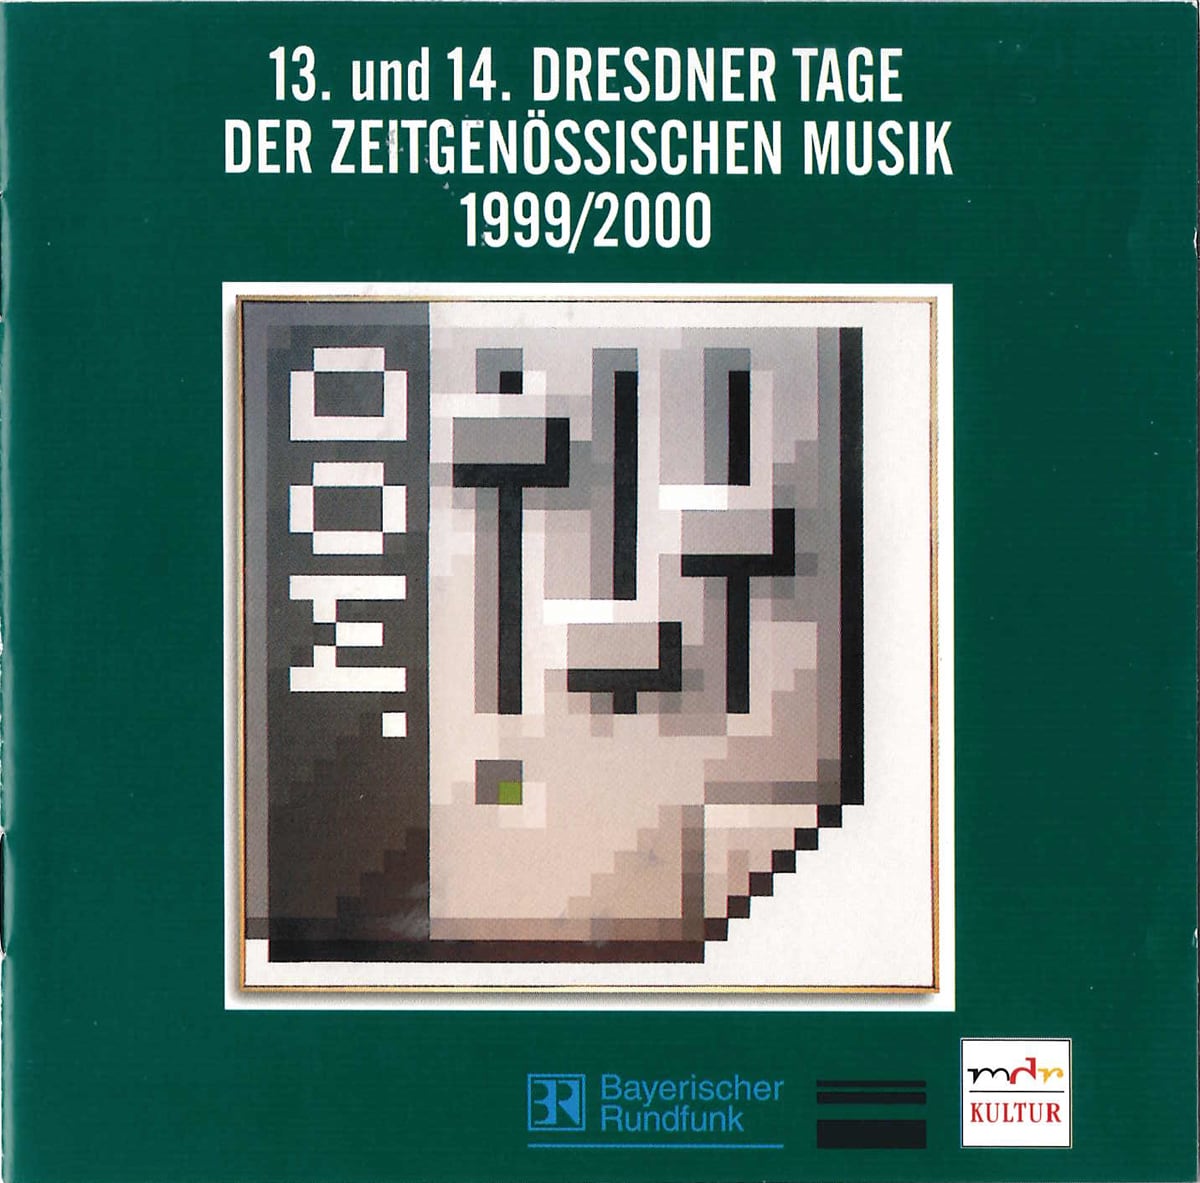 Beitrag zu den Dresdner Tagen der zeitgenössischen Musik 2003